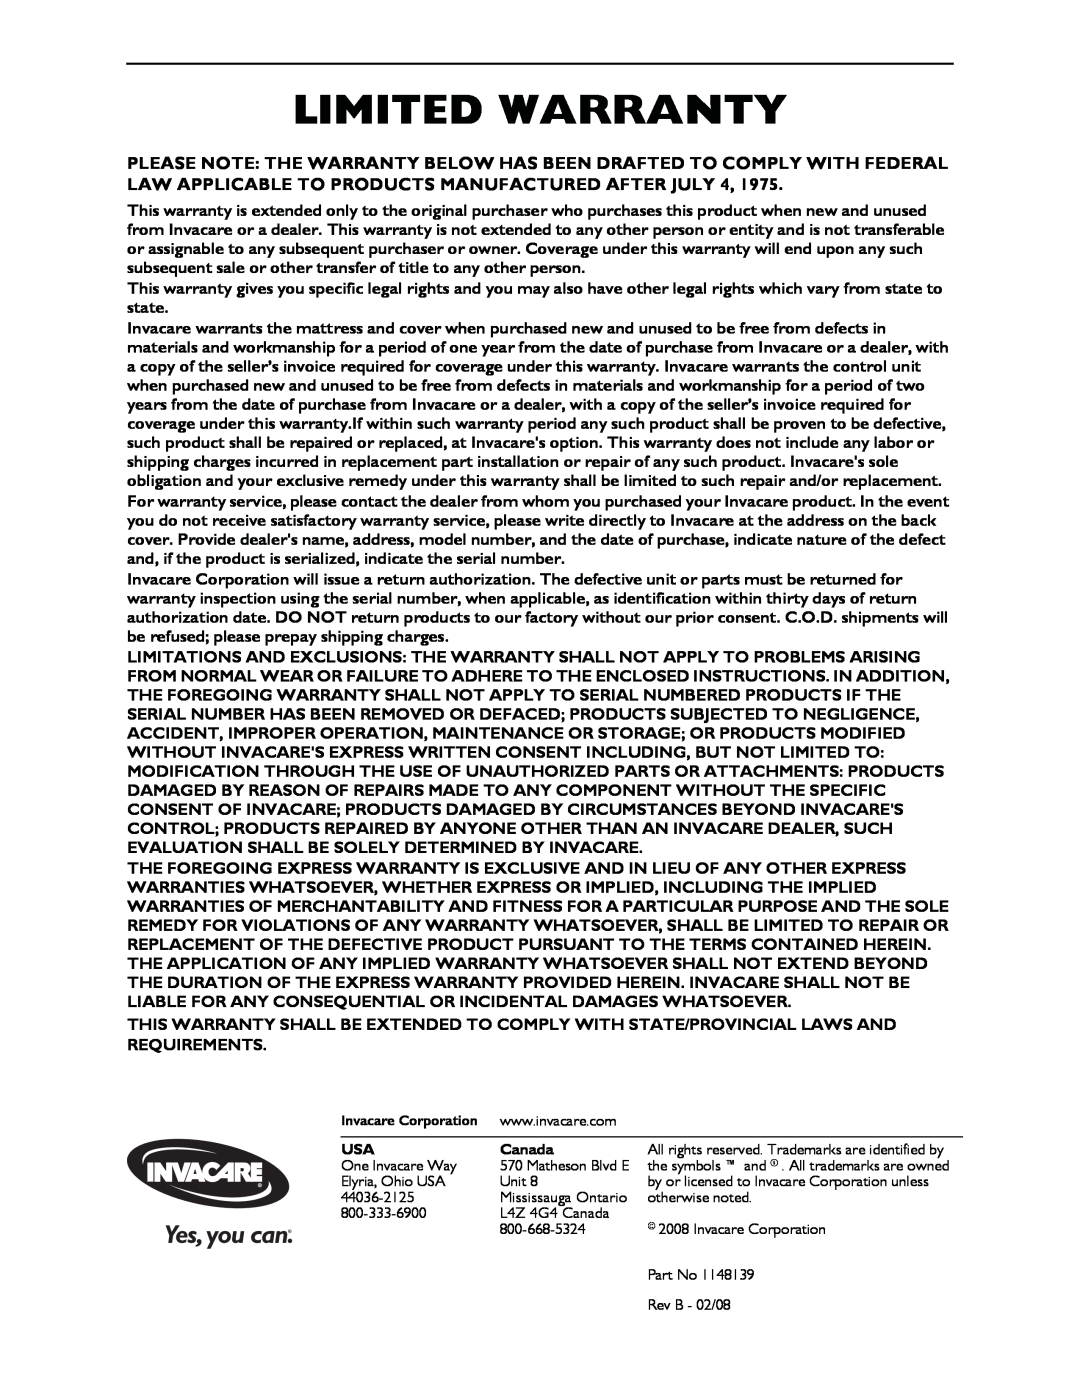 Invacare MA90Z, MA95Z manual Limited Warranty, Canada 